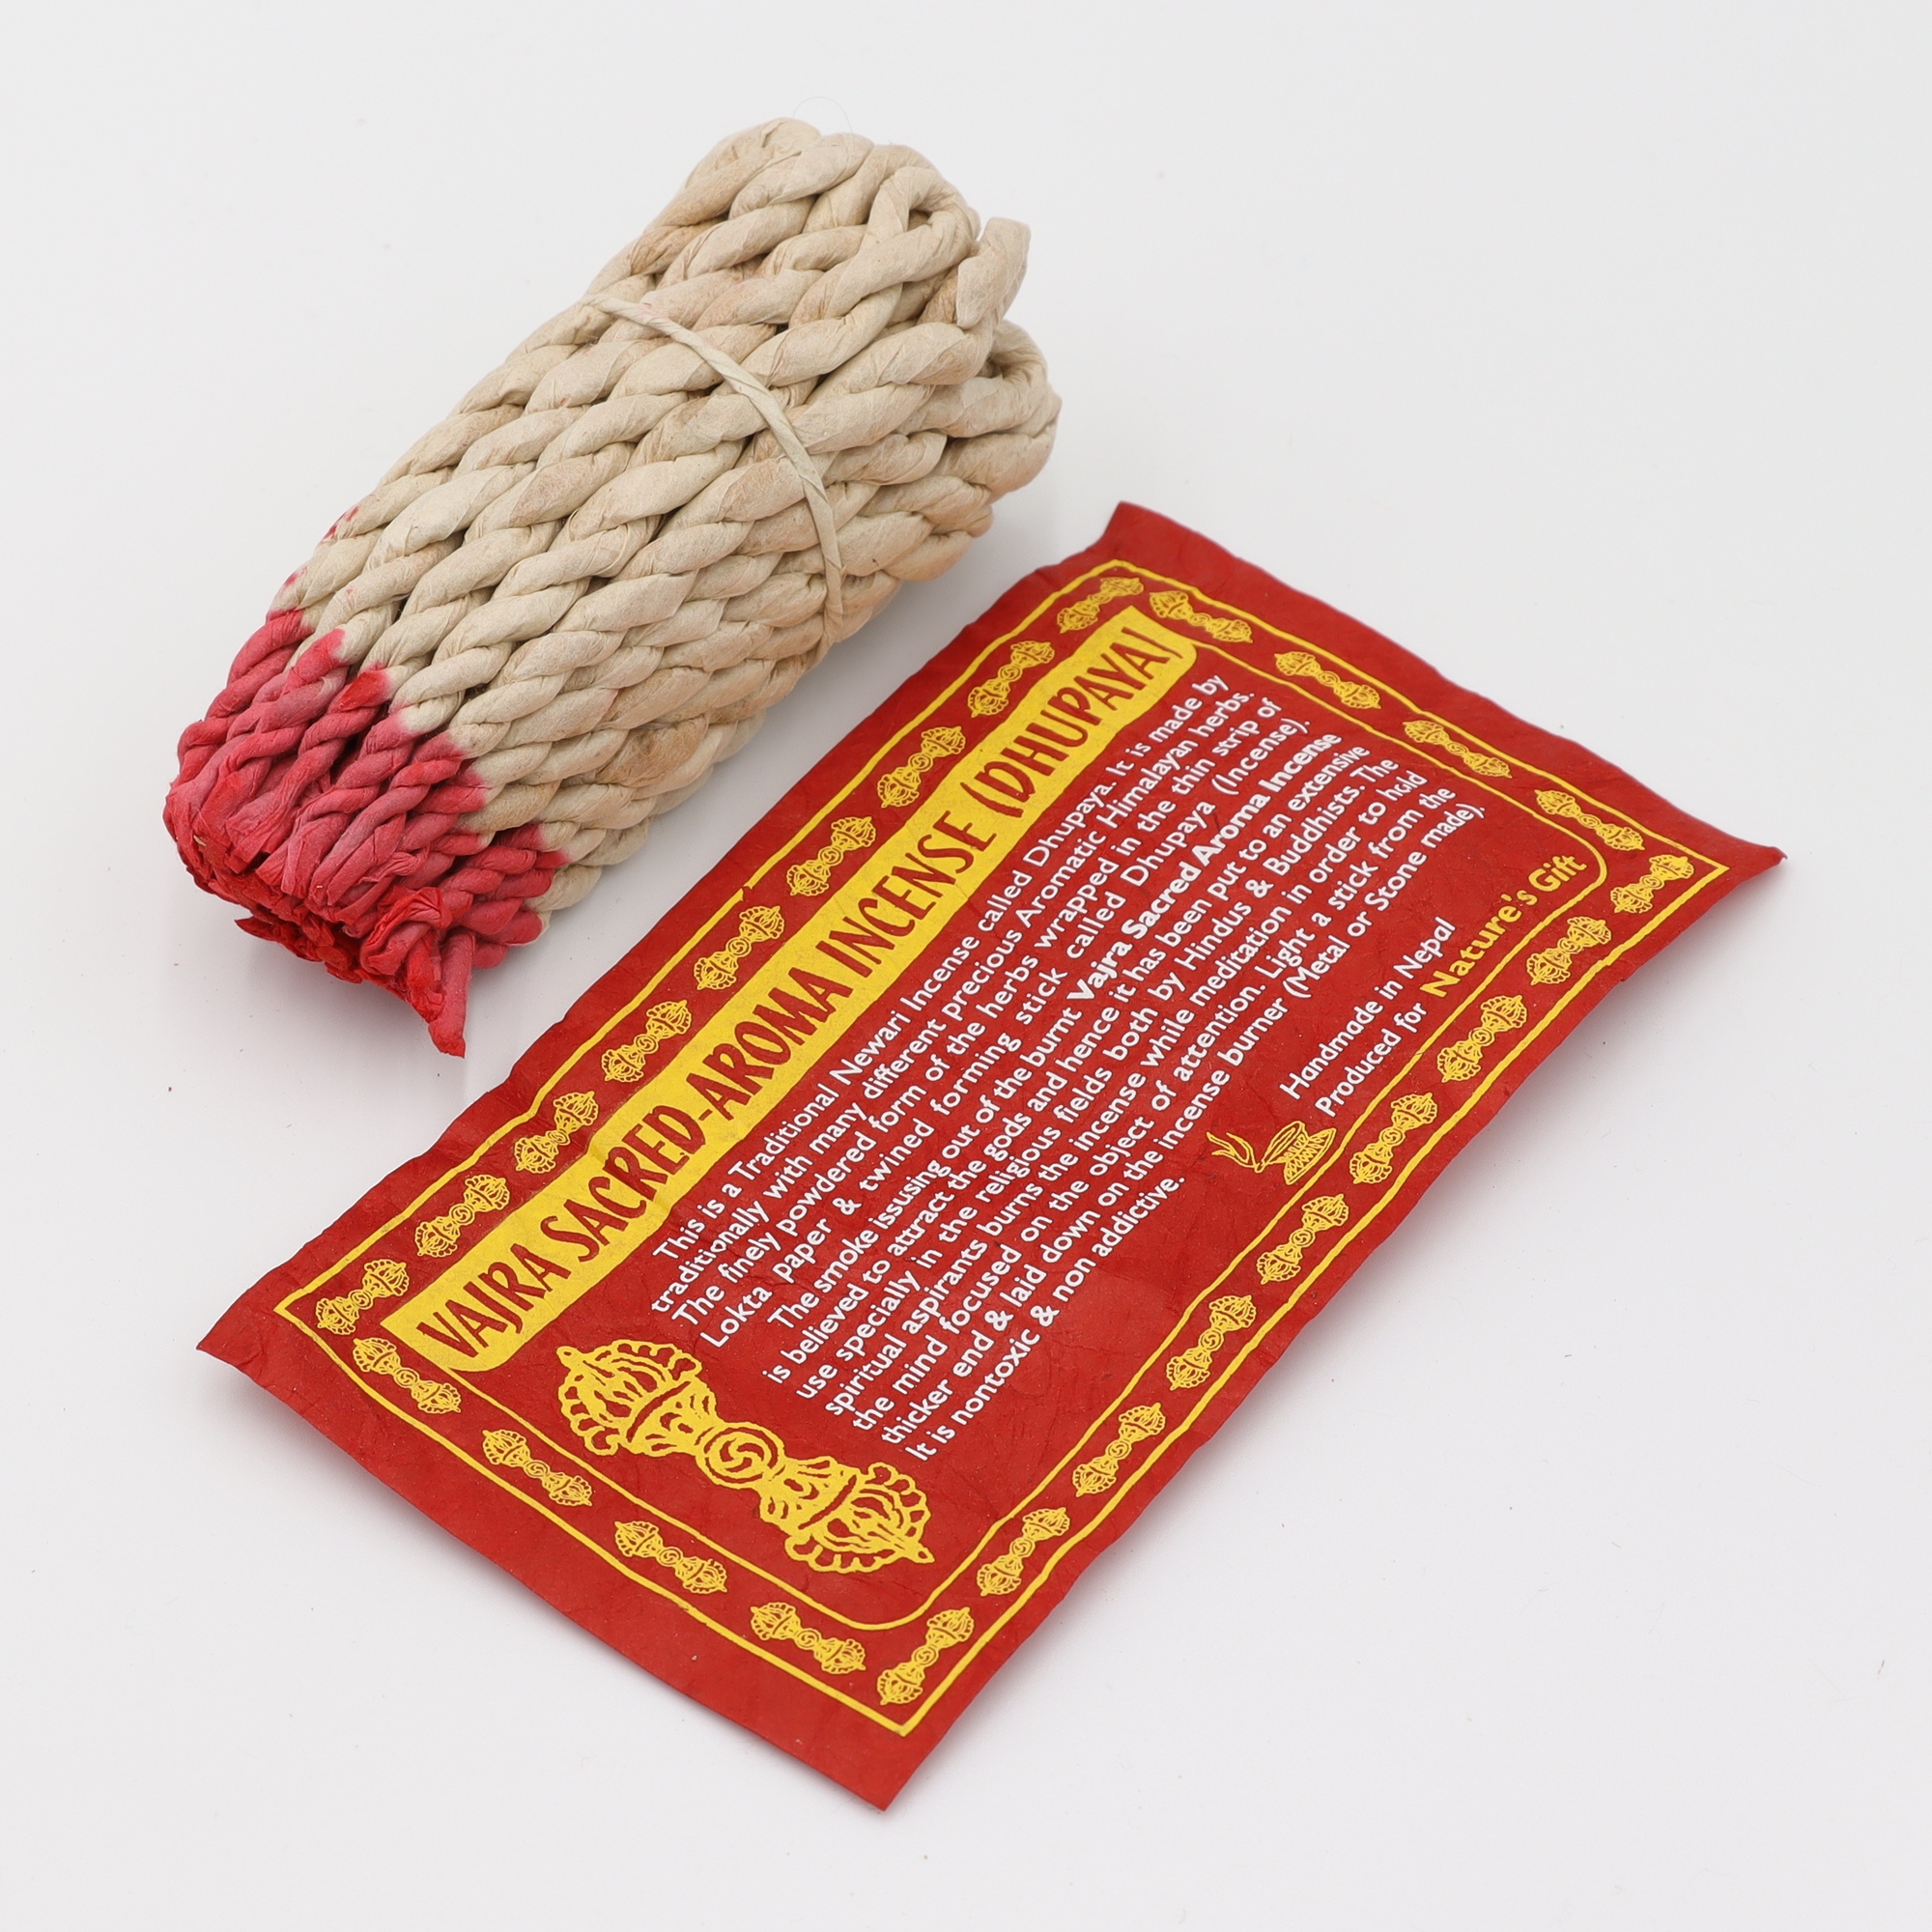 Nature's Gift - Sacred Aroma Incense - Räucherschnüre aus Nepal, in feines Loktapapier handgedrehte String Incense aus rein natürlichen Zutaten